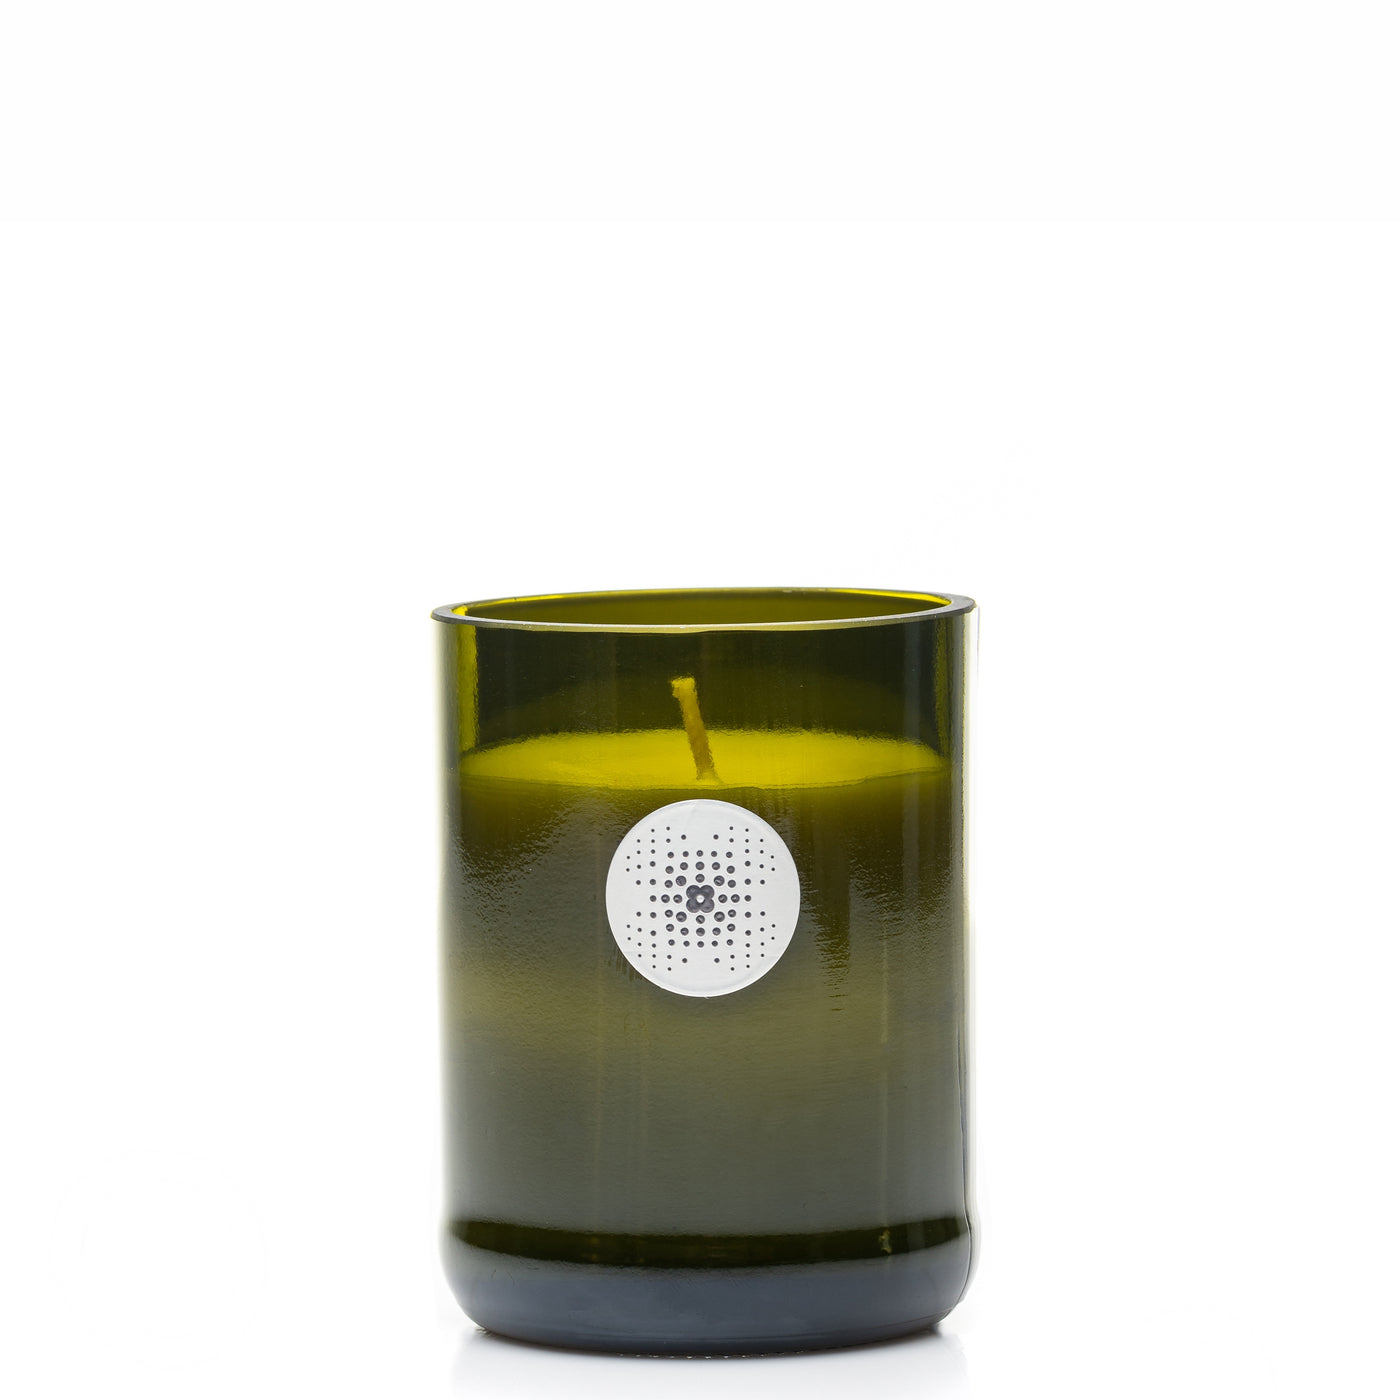 VIN & BOIS "DU VIN" scented candle